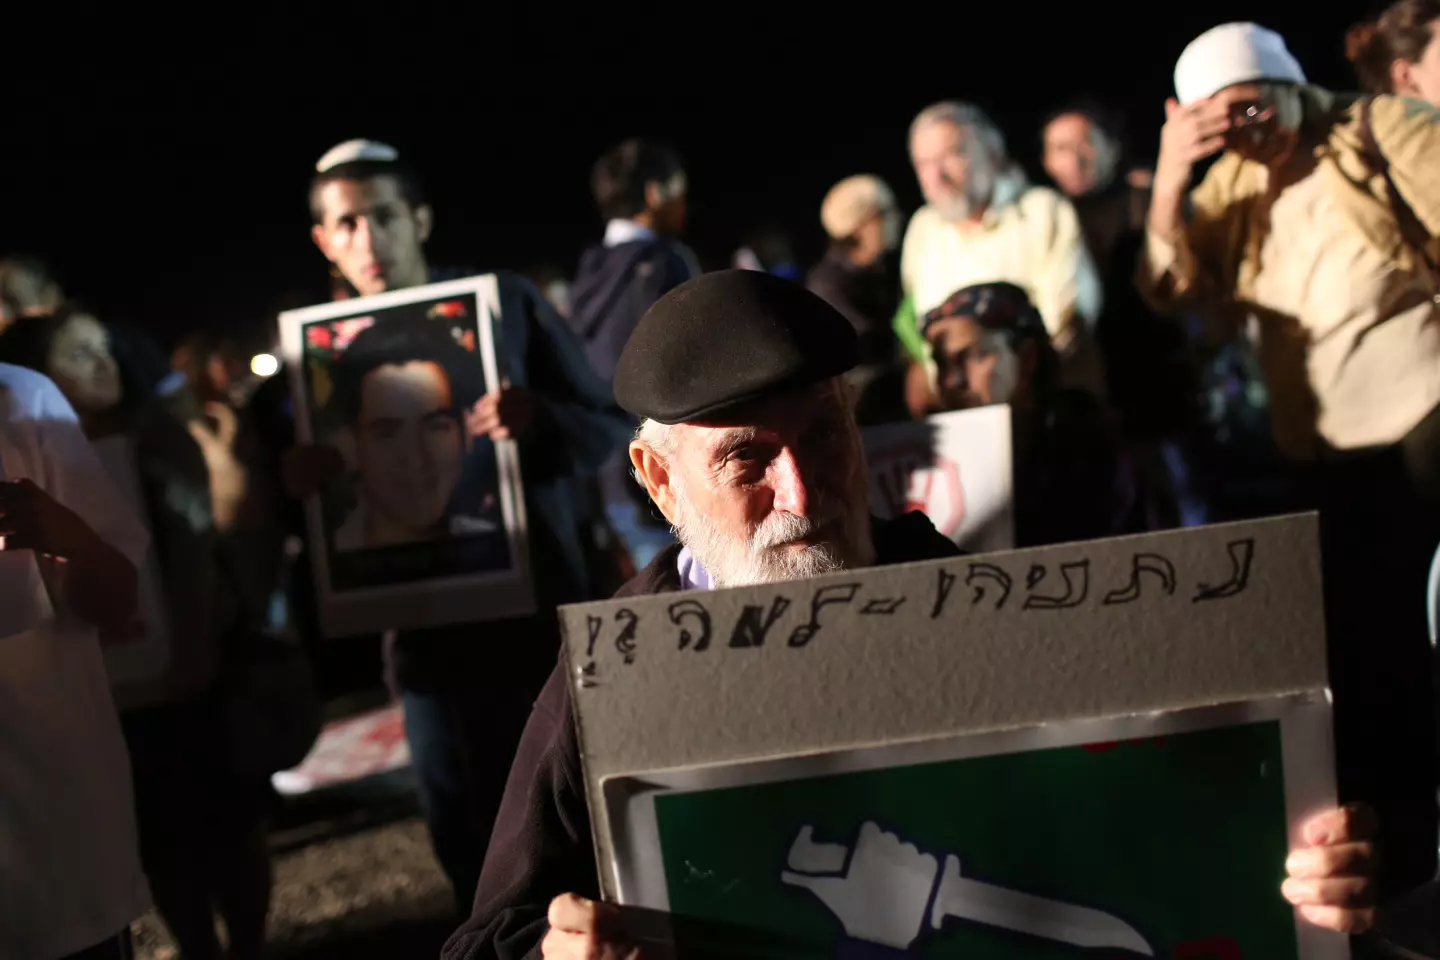 "דם יהודי אינו הפקר". אחד המשתתפים בהפגנה